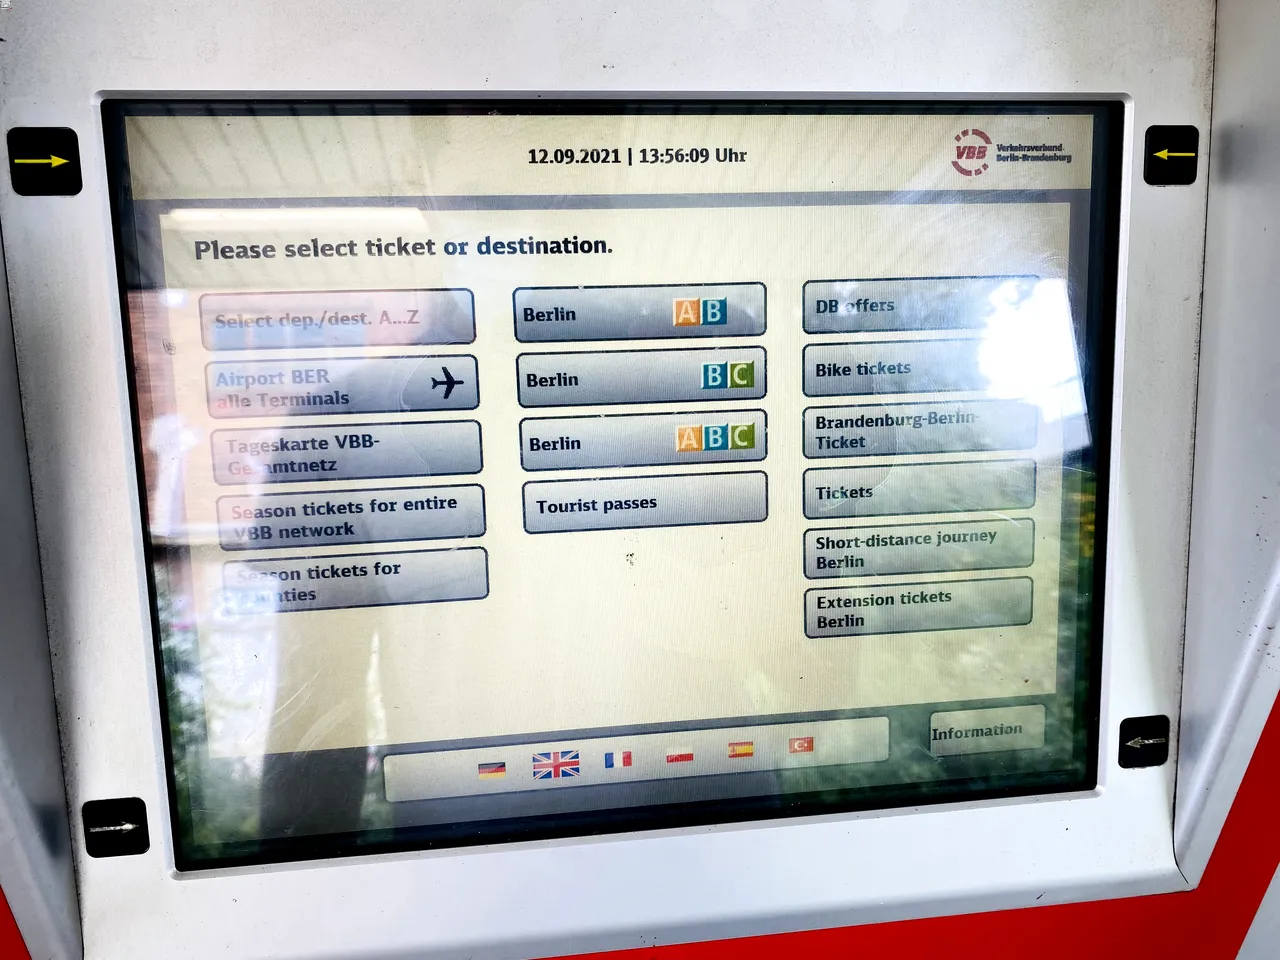 Imagem contendo a tela de uma das máquinas para compra de passagem